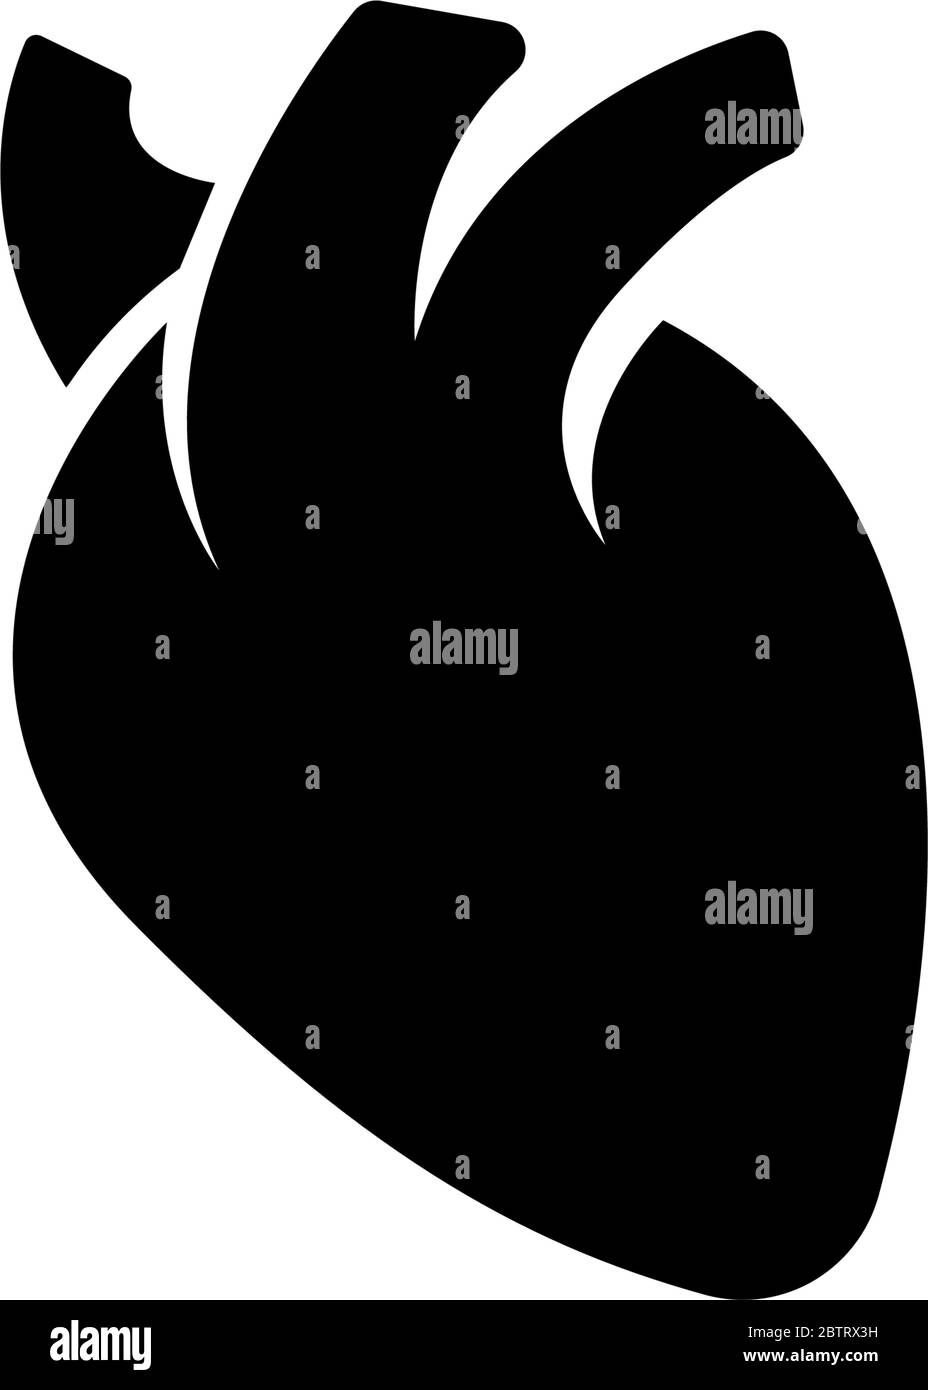 Menschliches Herz, Herzmuskel, Pump Organ. Abbildung des Symbols für flache Vektorgrafik. Einfaches schwarzes Symbol auf weißem Hintergrund. Menschliches Herzorgan, Herzmuskelsig Stock Vektor